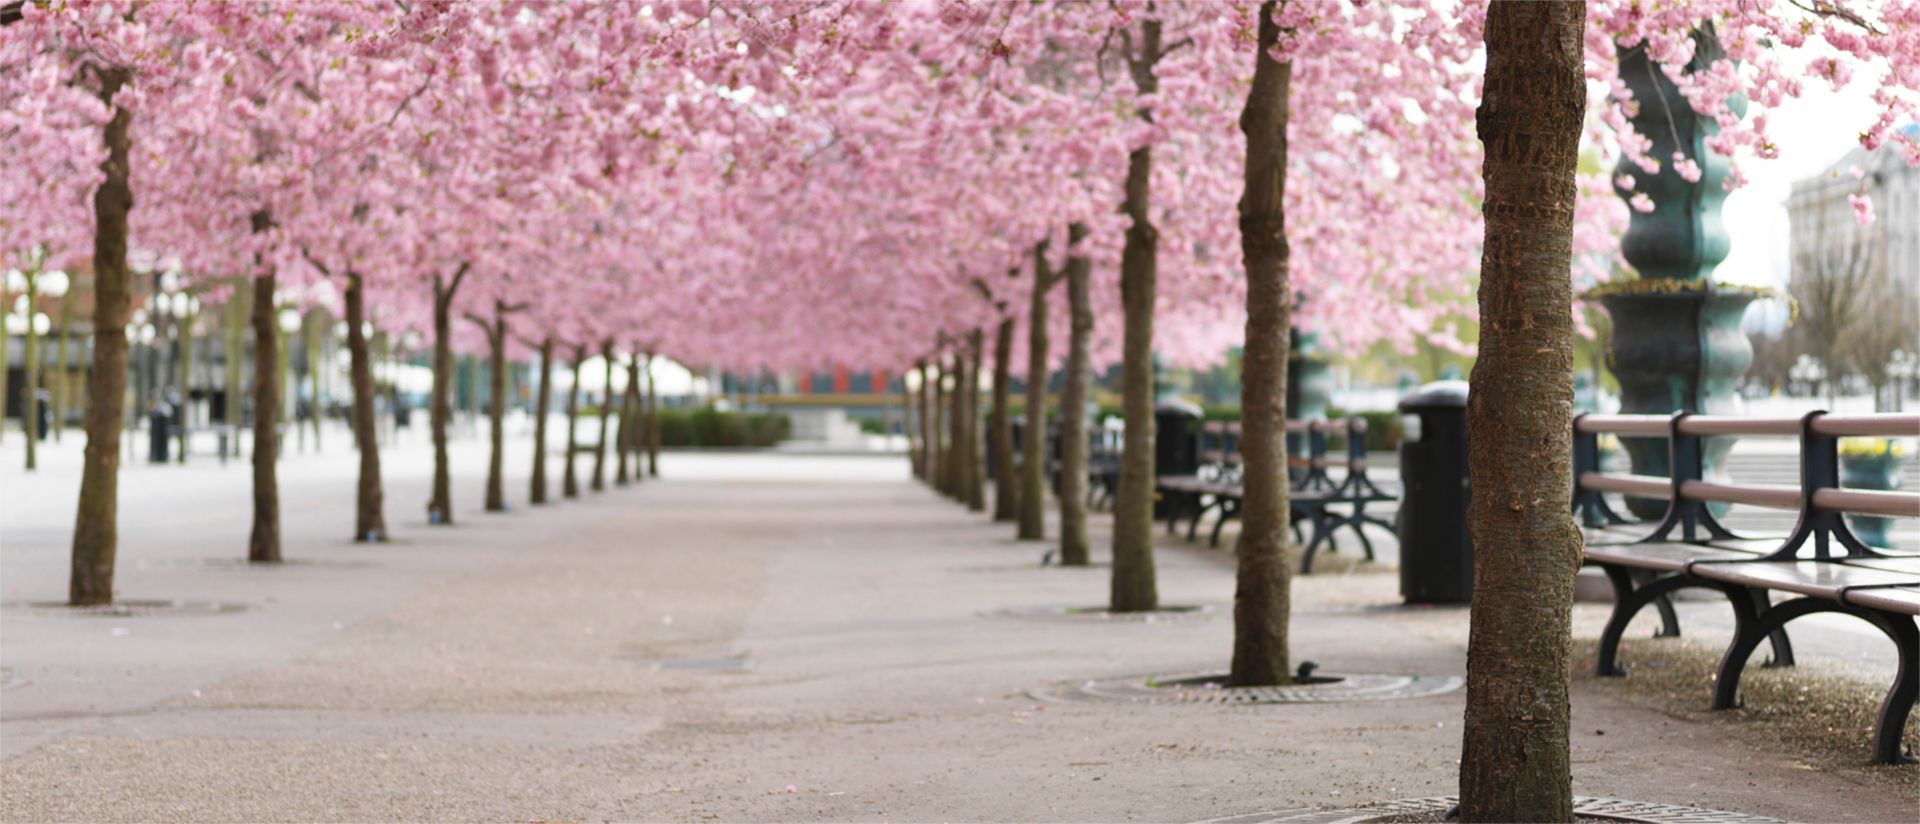 Kirschbäume in einem öffentlichen Park